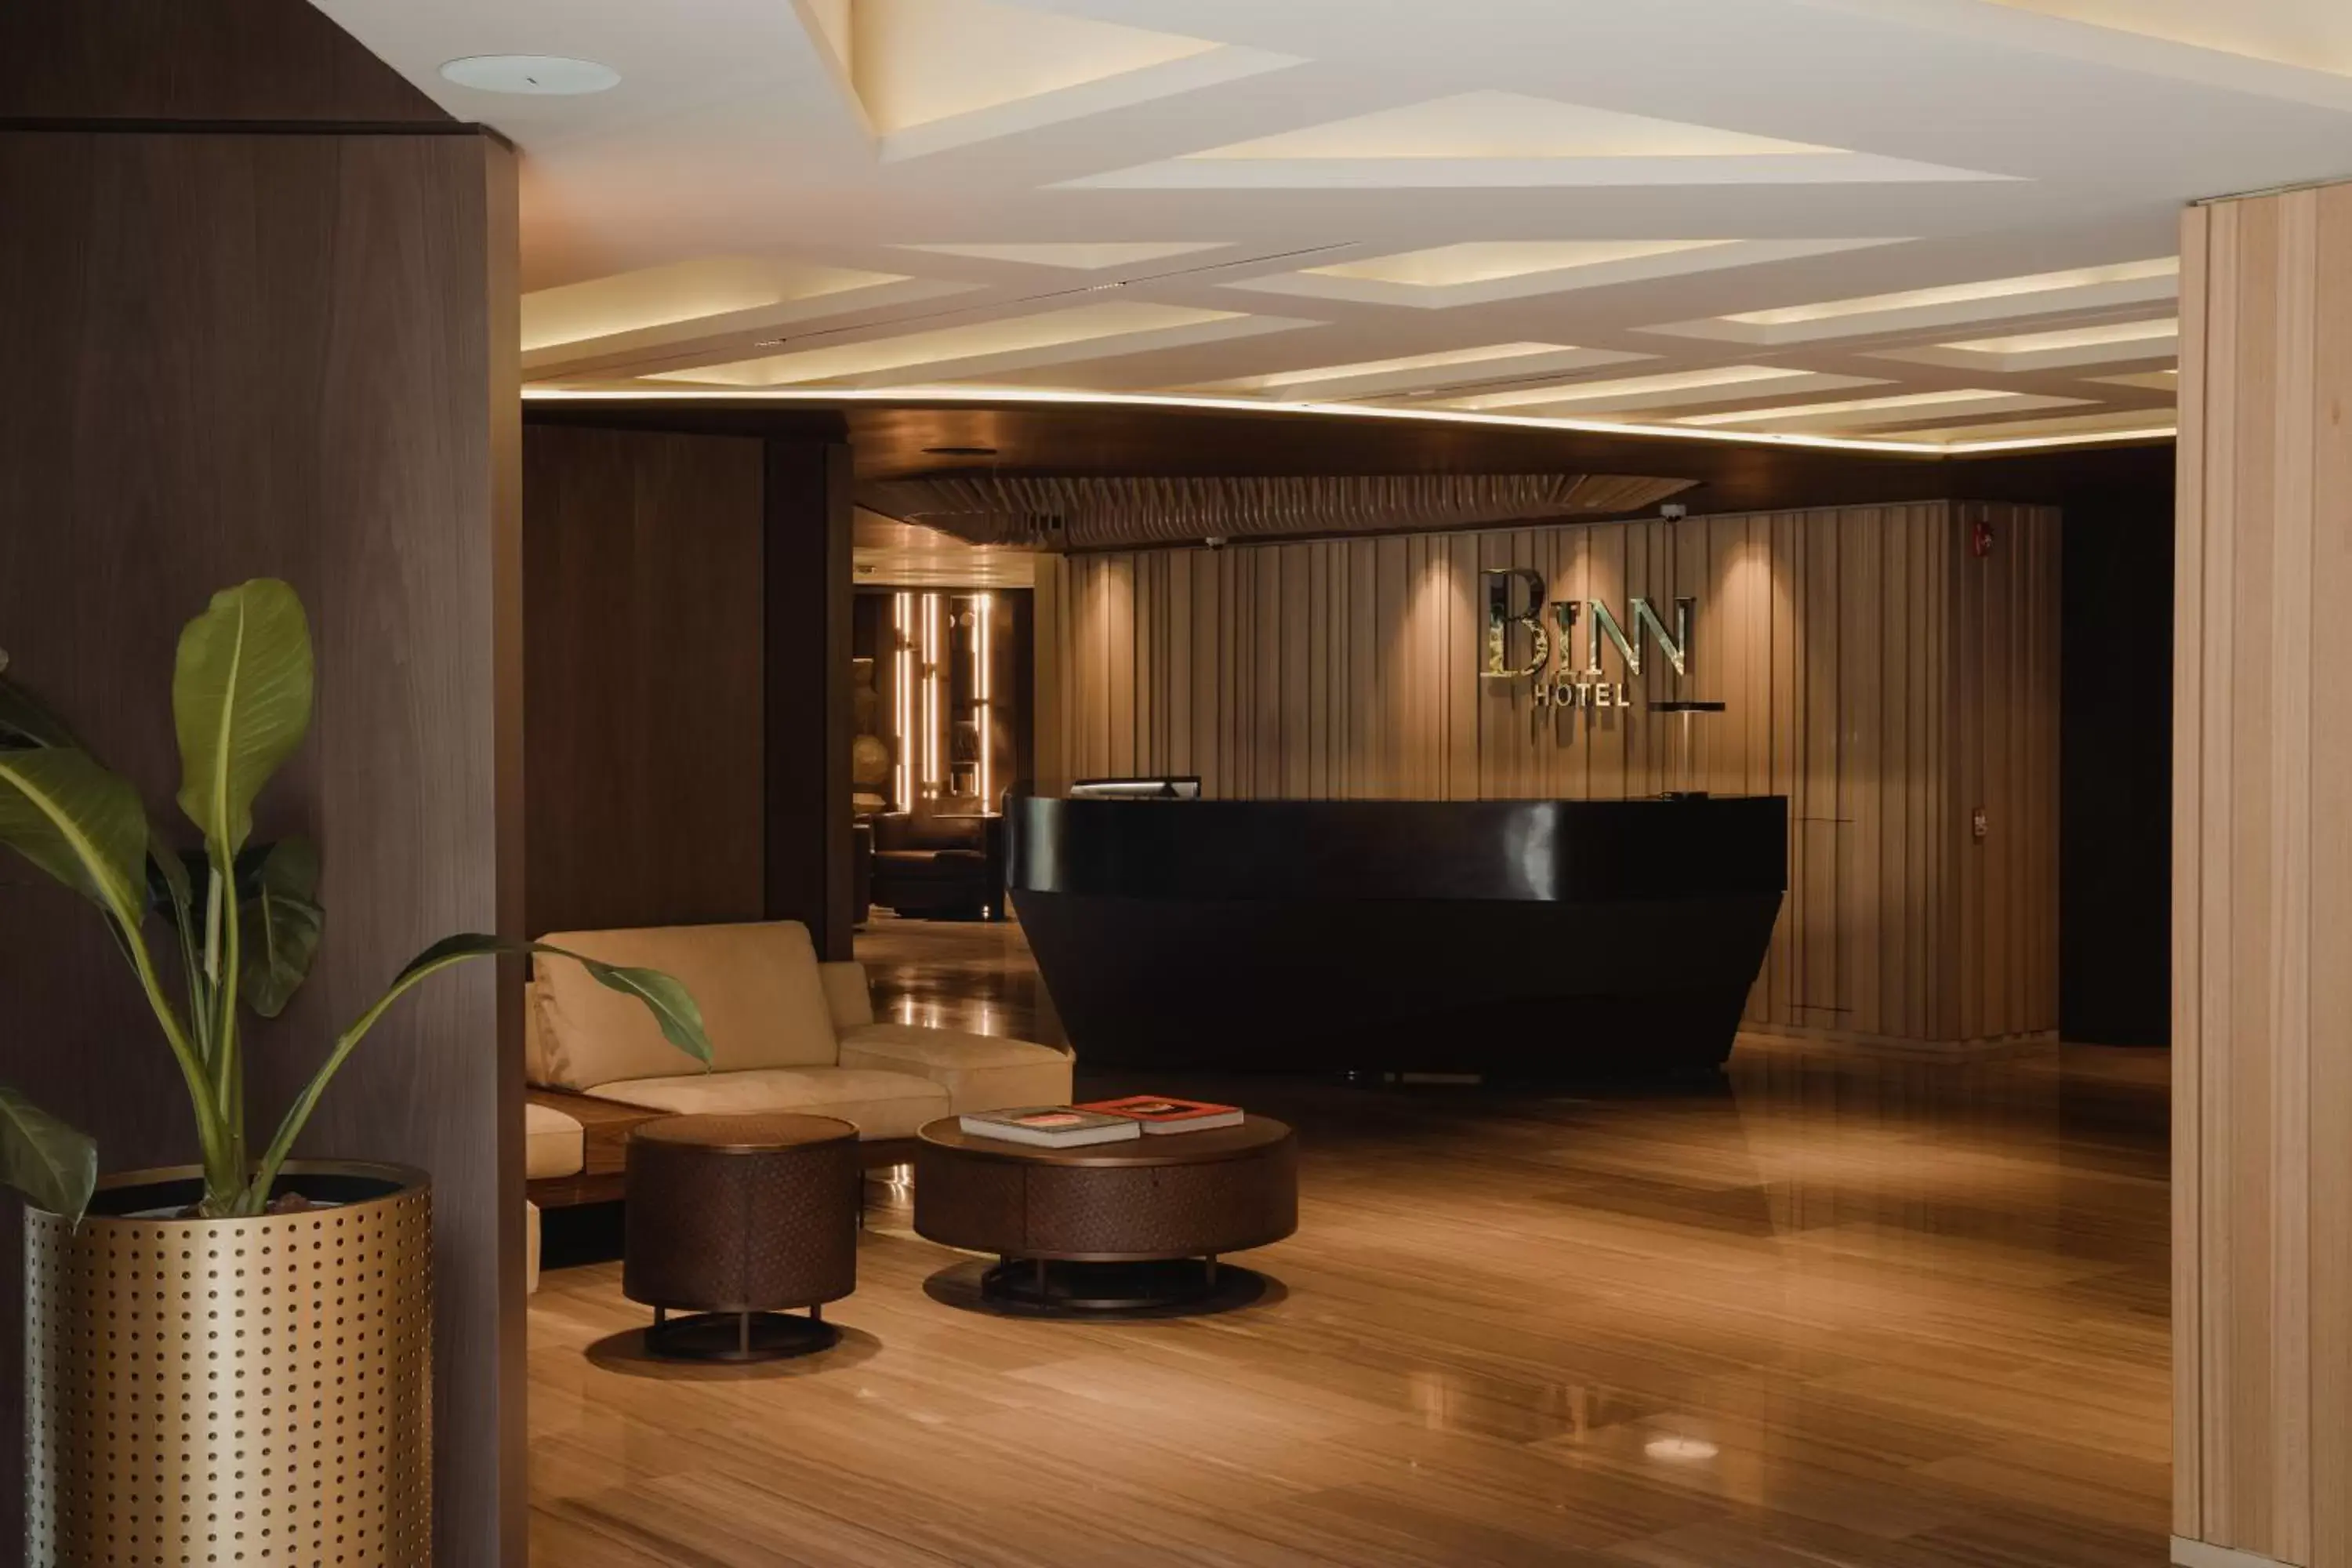 Lobby or reception, Lobby/Reception in Binn Hotel